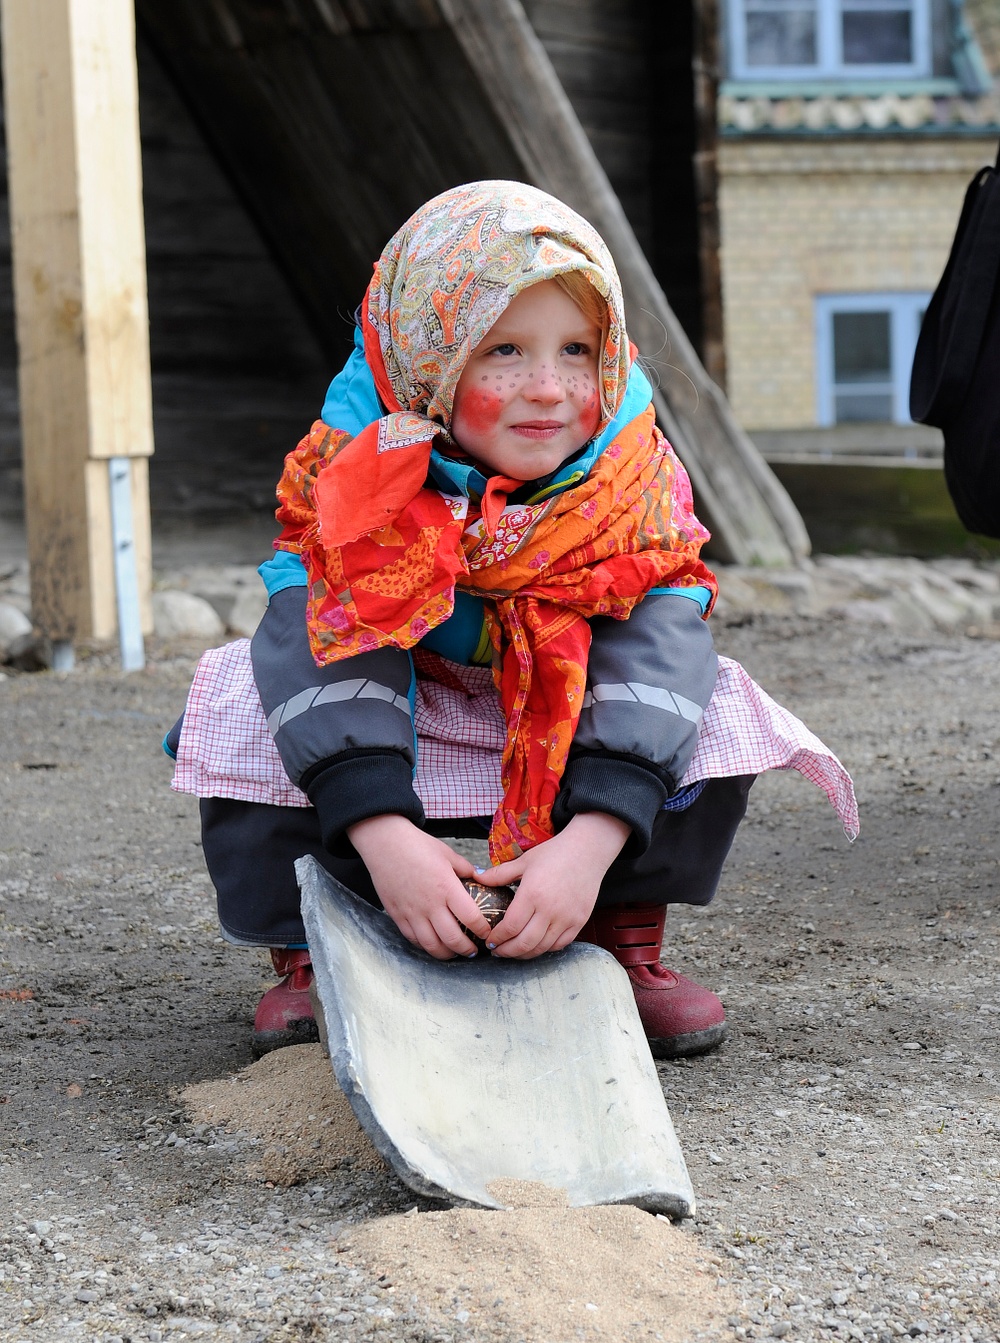 Påskkärring deltar i utomhuslekarna. Foto: Viveca Ohlsson/Kulturen